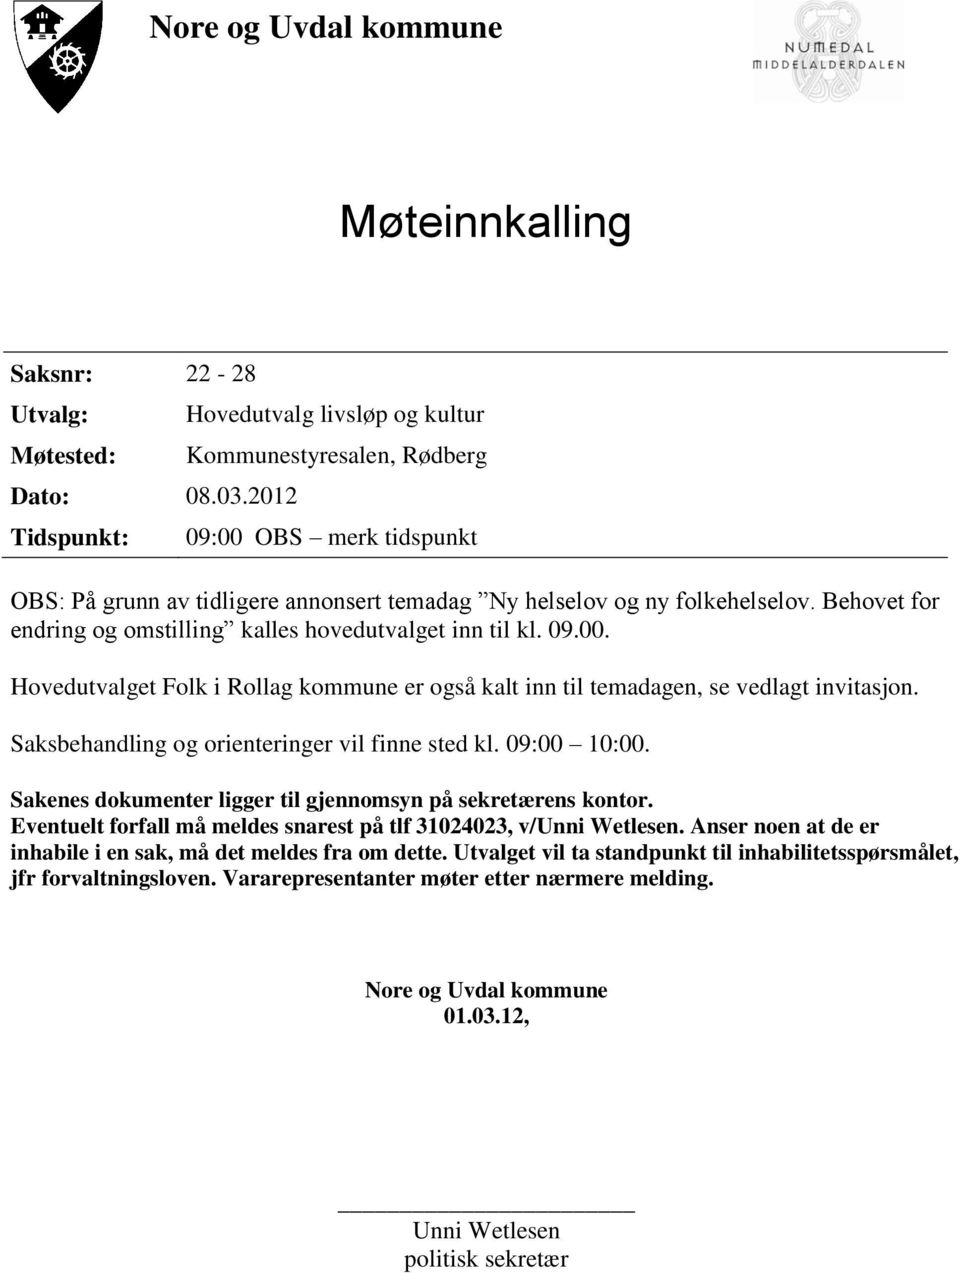 Behovet for endring og omstilling kalles hovedutvalget inn til kl. 09.00. Hovedutvalget Folk i Rollag kommune er også kalt inn til temadagen, se vedlagt invitasjon.